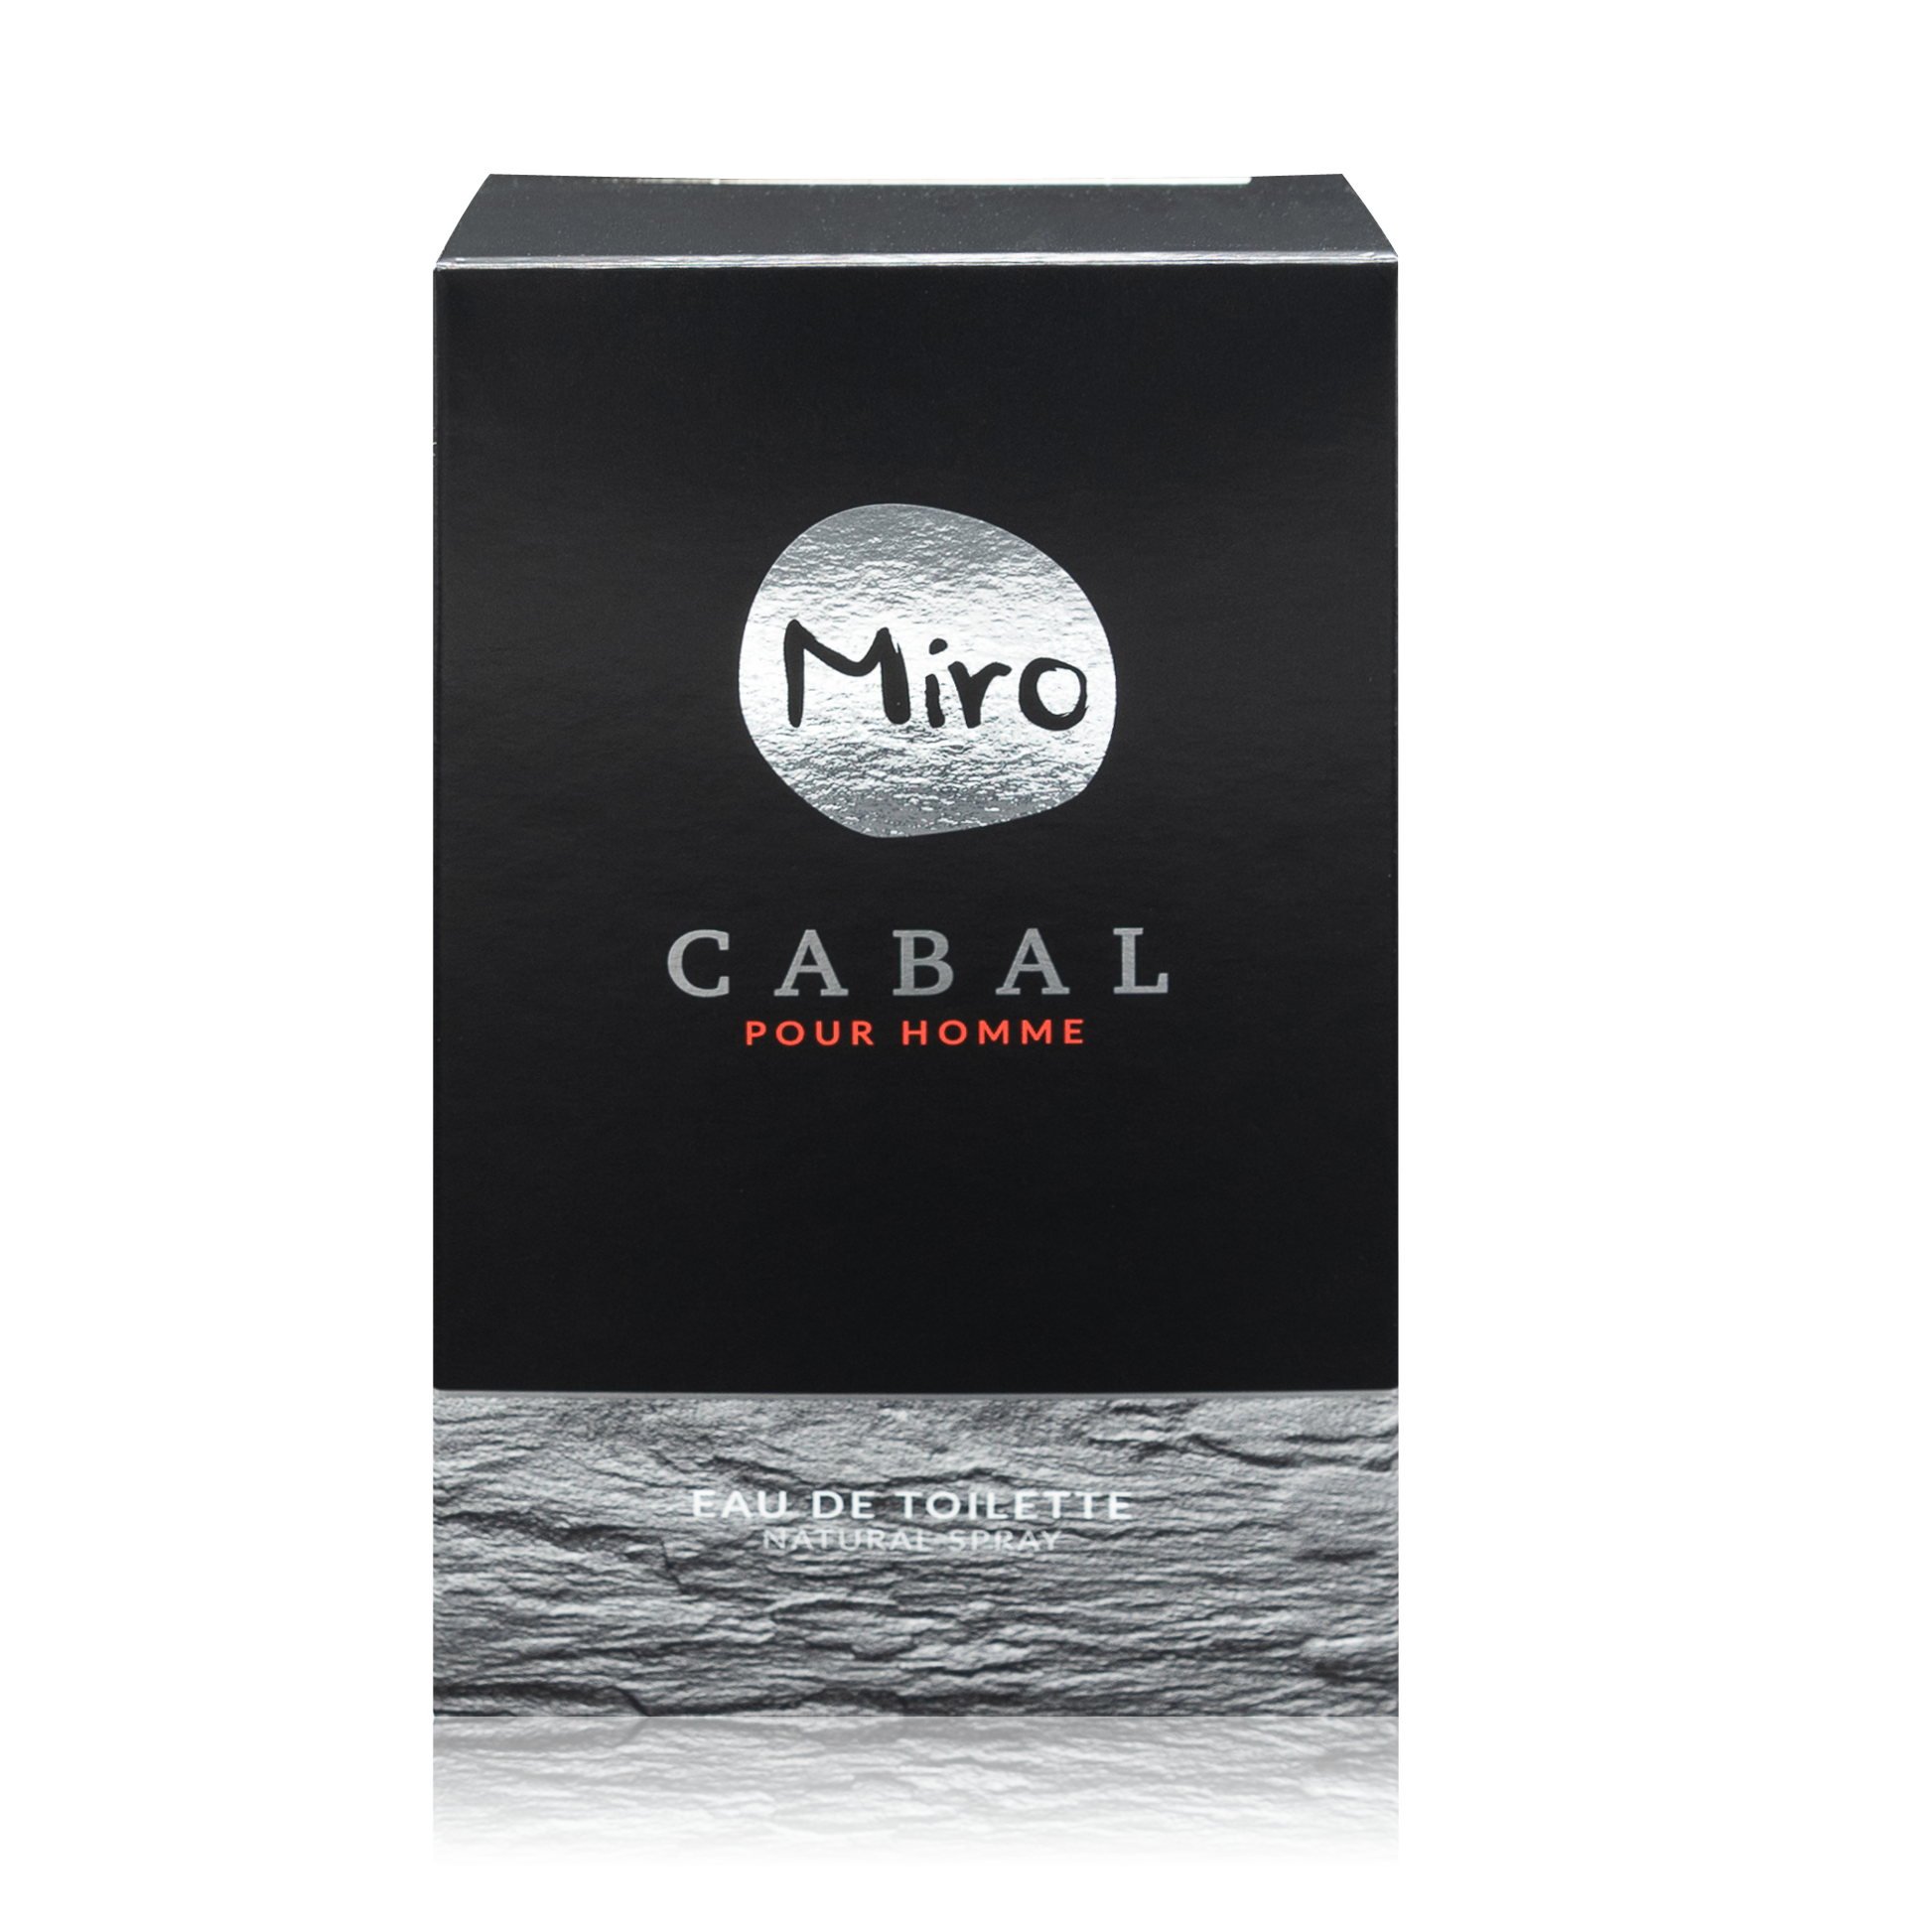 Miro CABAL Natural Spray pour homme - Eau de toilette für Männer (75ml) - RoTe Place